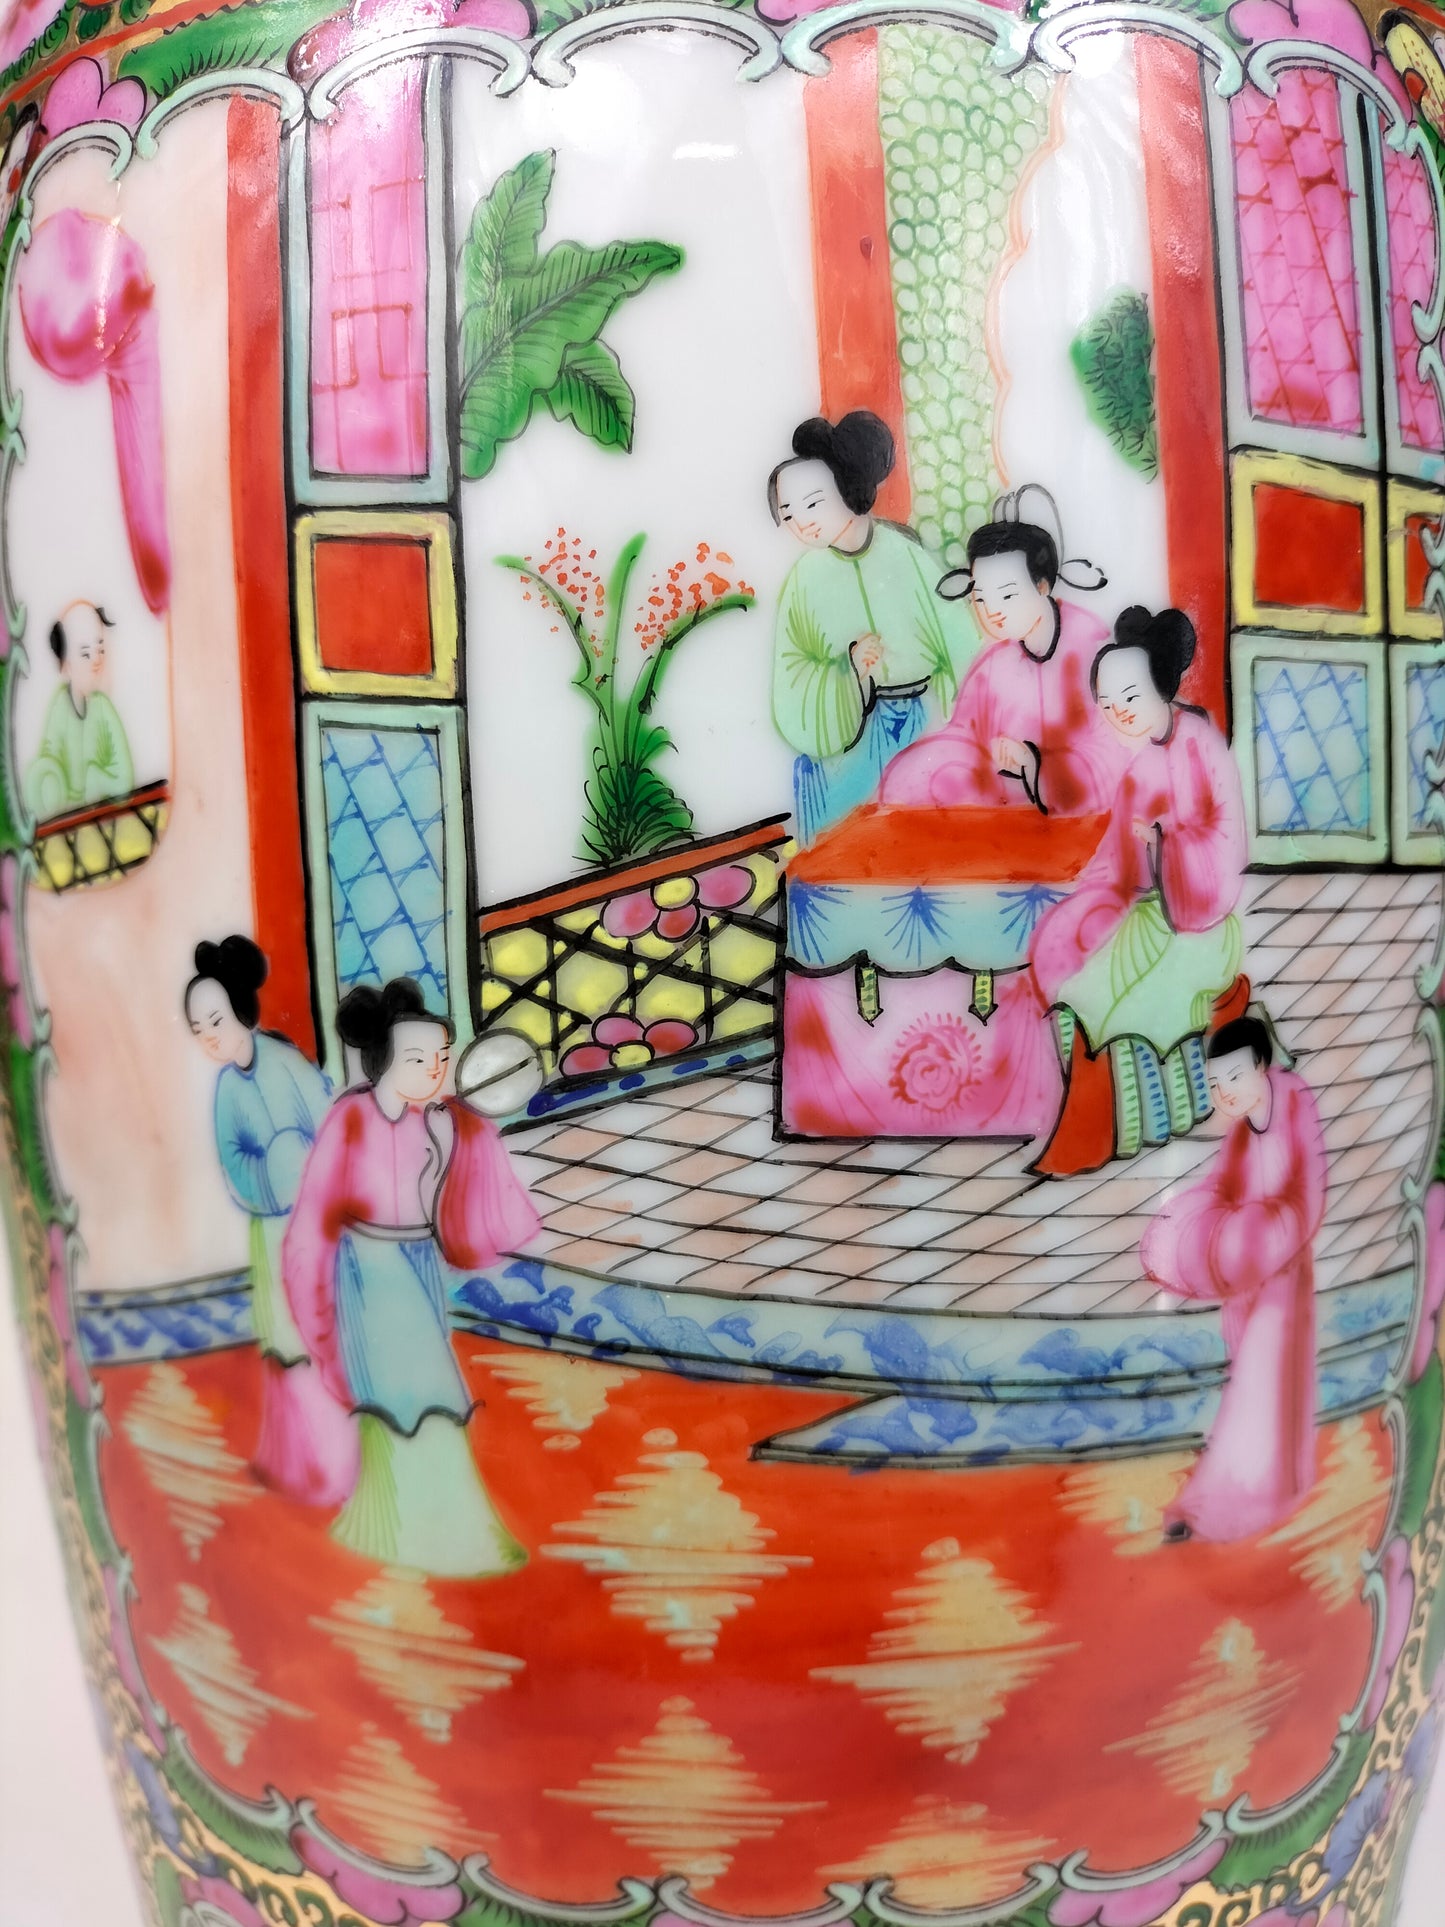 大型中国广州玫瑰花章花瓶，饰有人物和花卉 // 20 世纪